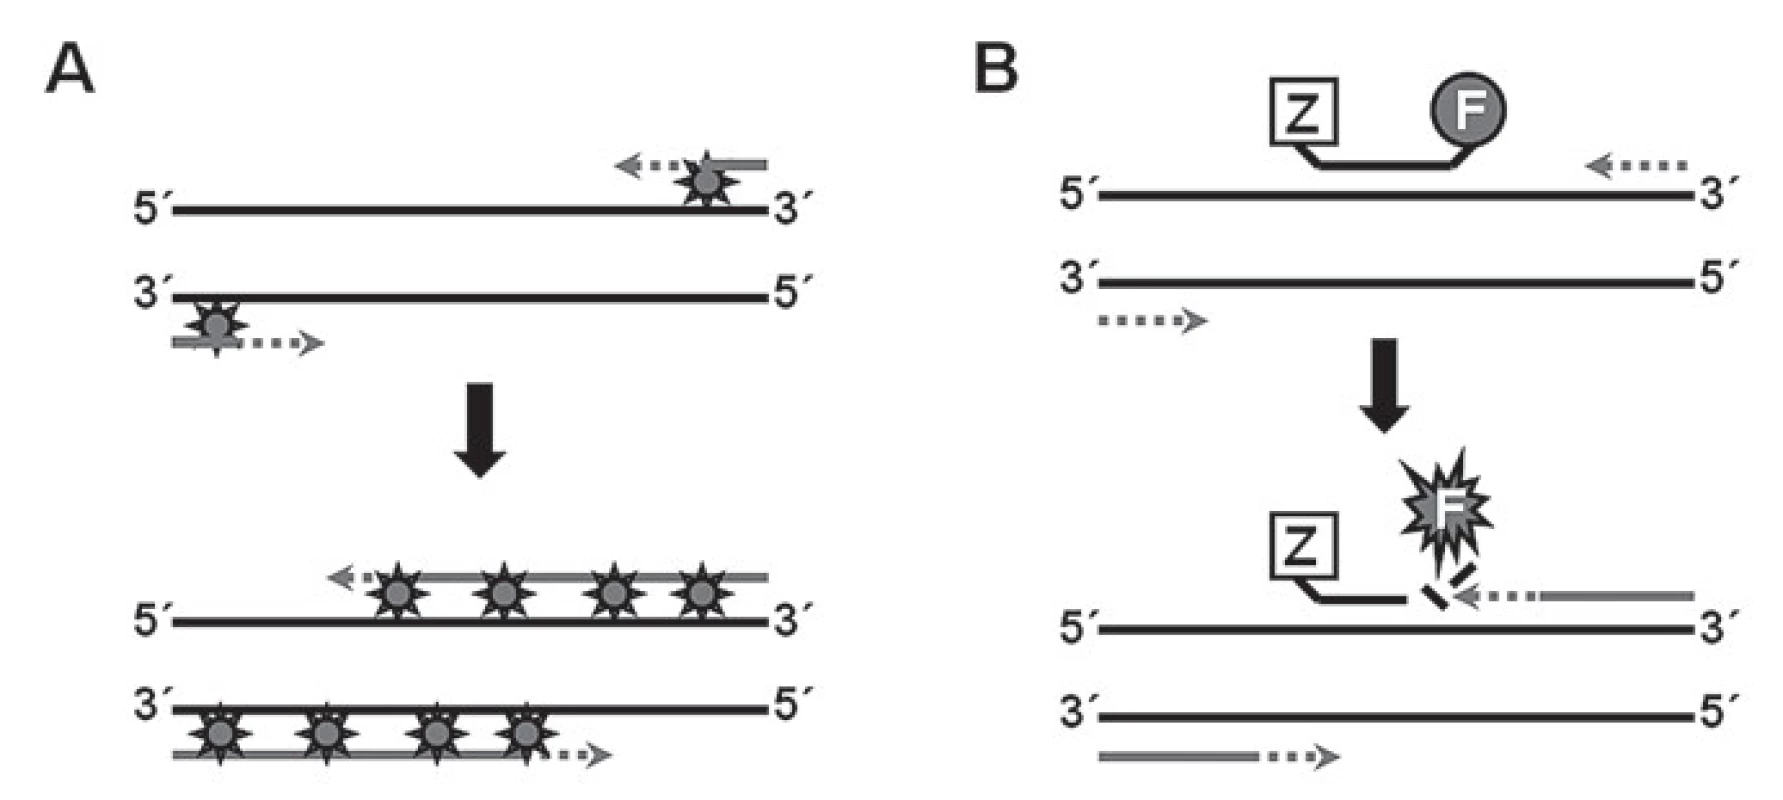 Princip využití nespecifických a specifických sond při PCR v reálném čase.
A. Nespecifi cká próba (nejčastěji SYBR Green) se váže na dsDNA, čímž dochází k emisi fluorescence.
B. Působením exonukleázové aktivity polymerázy dochází k rozštěpení próby navázané k cílové sekvenci a následnému uvolnění fluorescenčního signálu.